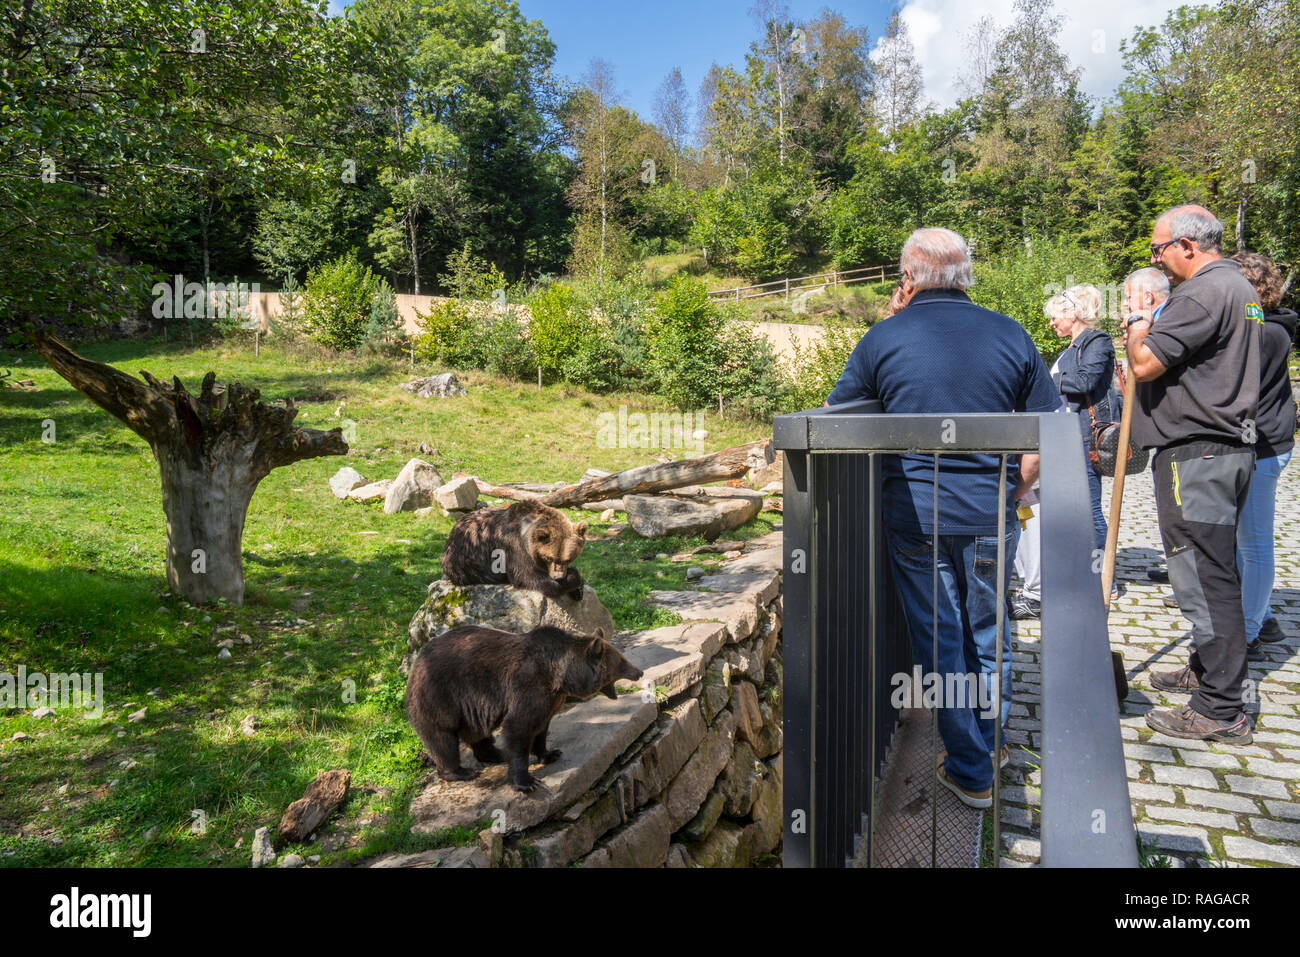 Ai visitatori la visione di captive orso bruno in involucro allo zoo Aran Park, parco animale / giardino zoologico a Bossost, Lleida, Pirenei, Catalogna, Spagna Foto Stock